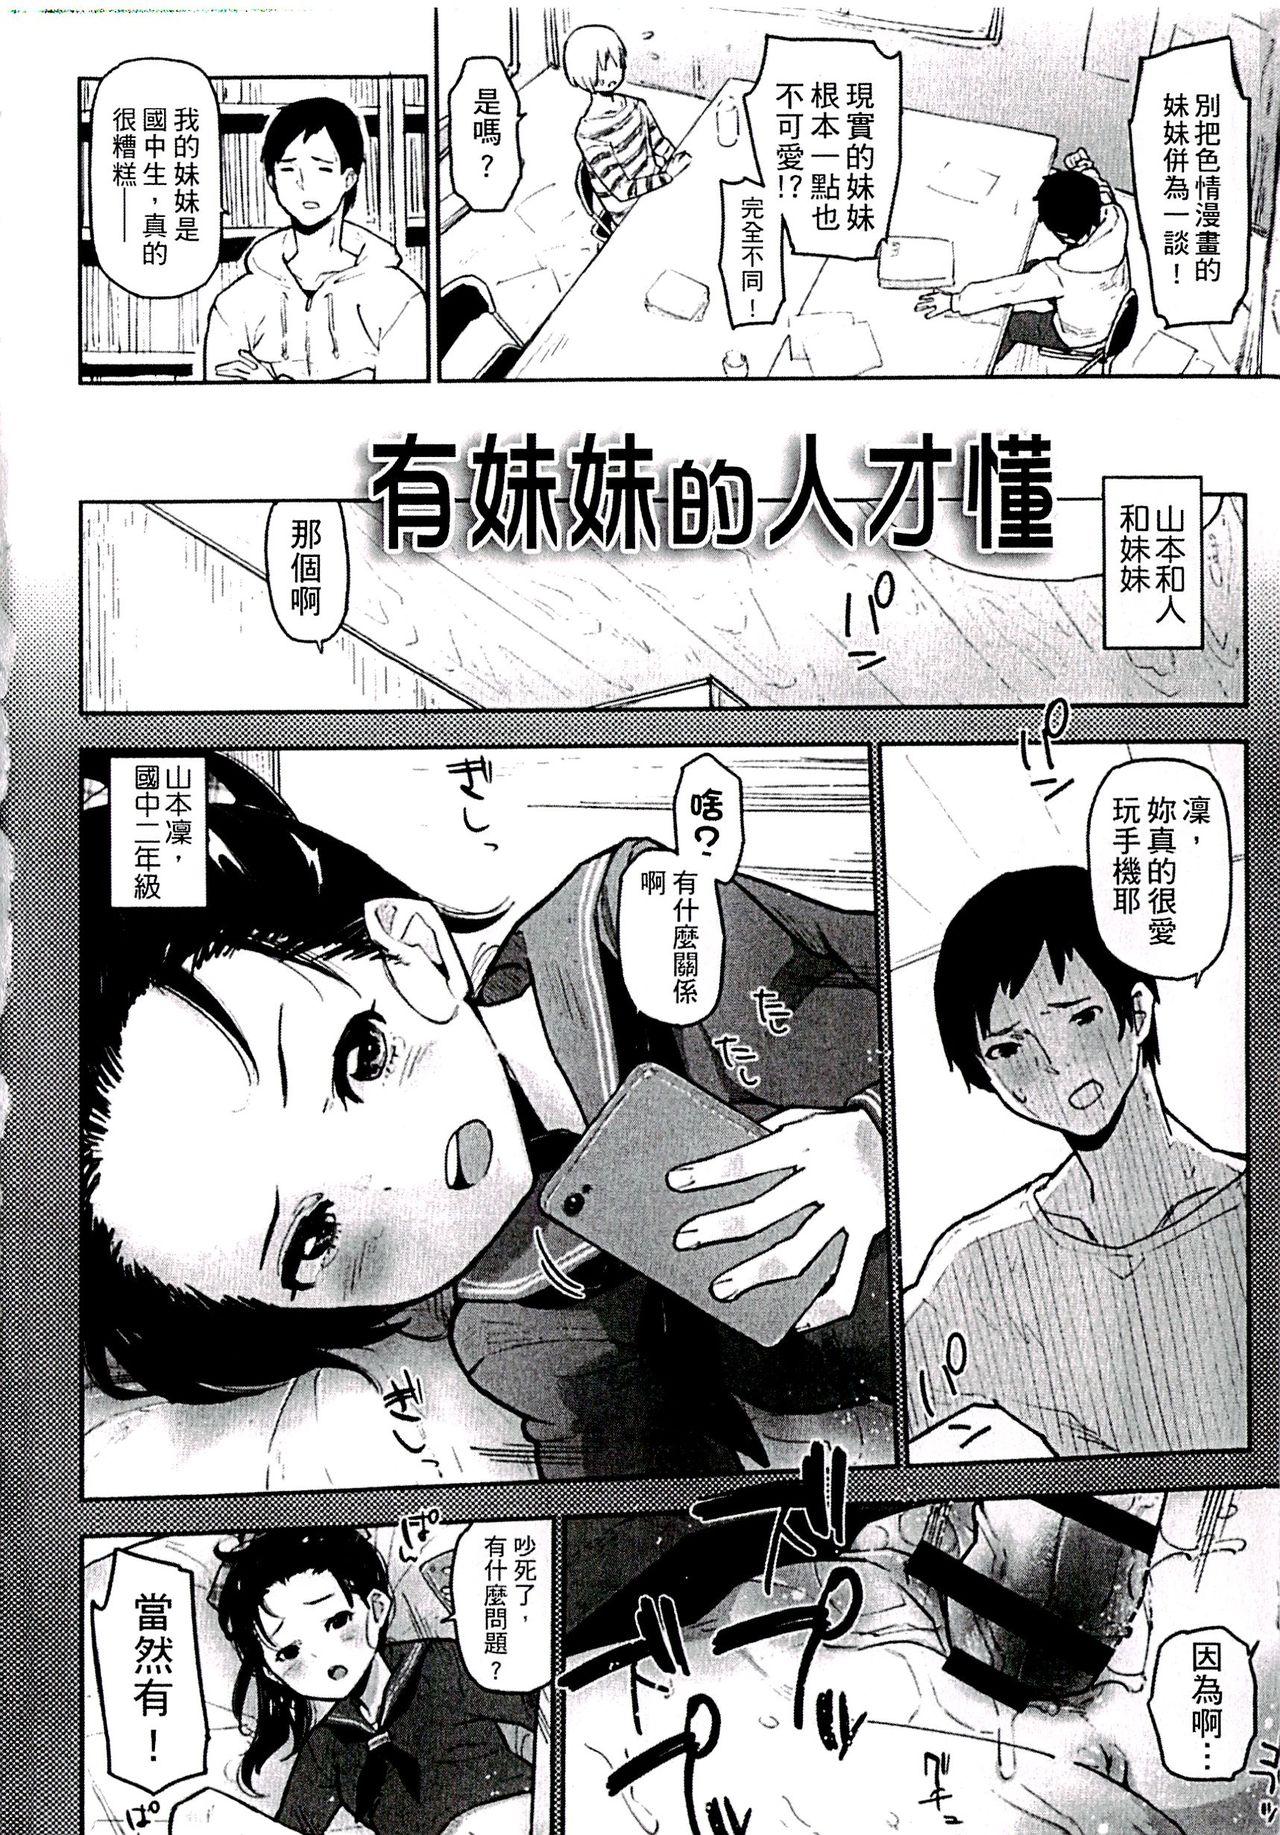 Atm Chippai ha Seikou no moto│貧乳最珍貴 Mamando - Page 6